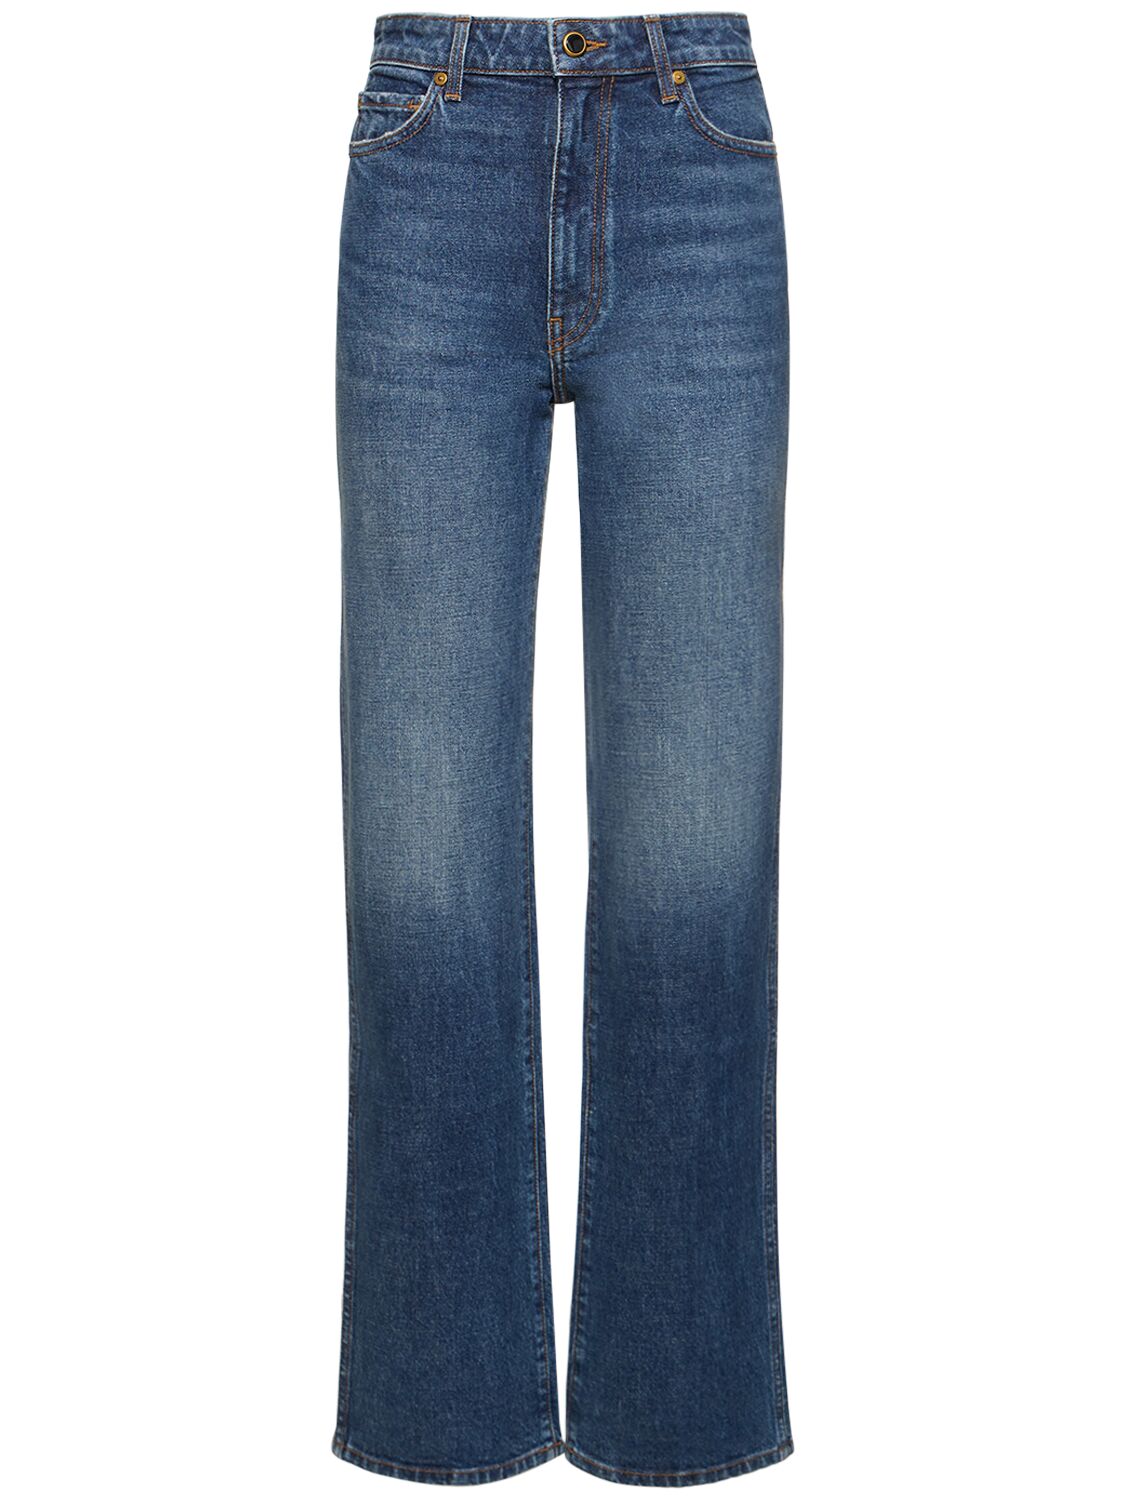 Pantalones Acampanados De Alta Cintura Para Mujer Jeans Rectos